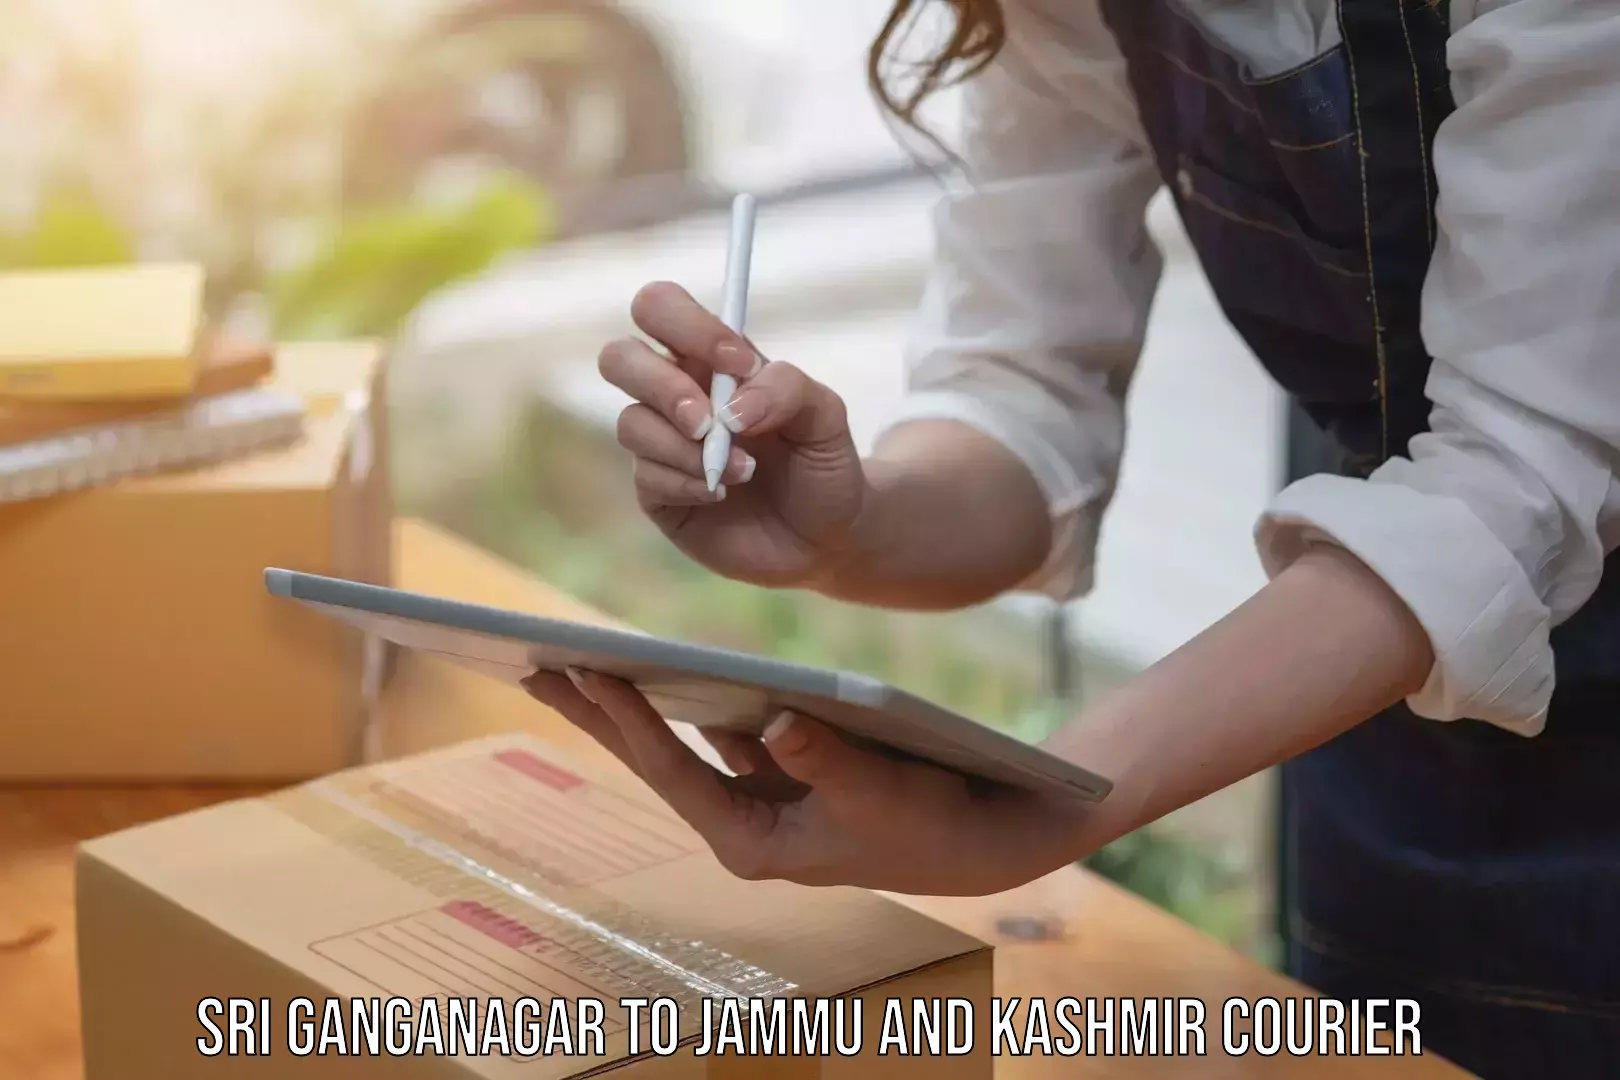 Ocean freight courier Sri Ganganagar to Jammu and Kashmir